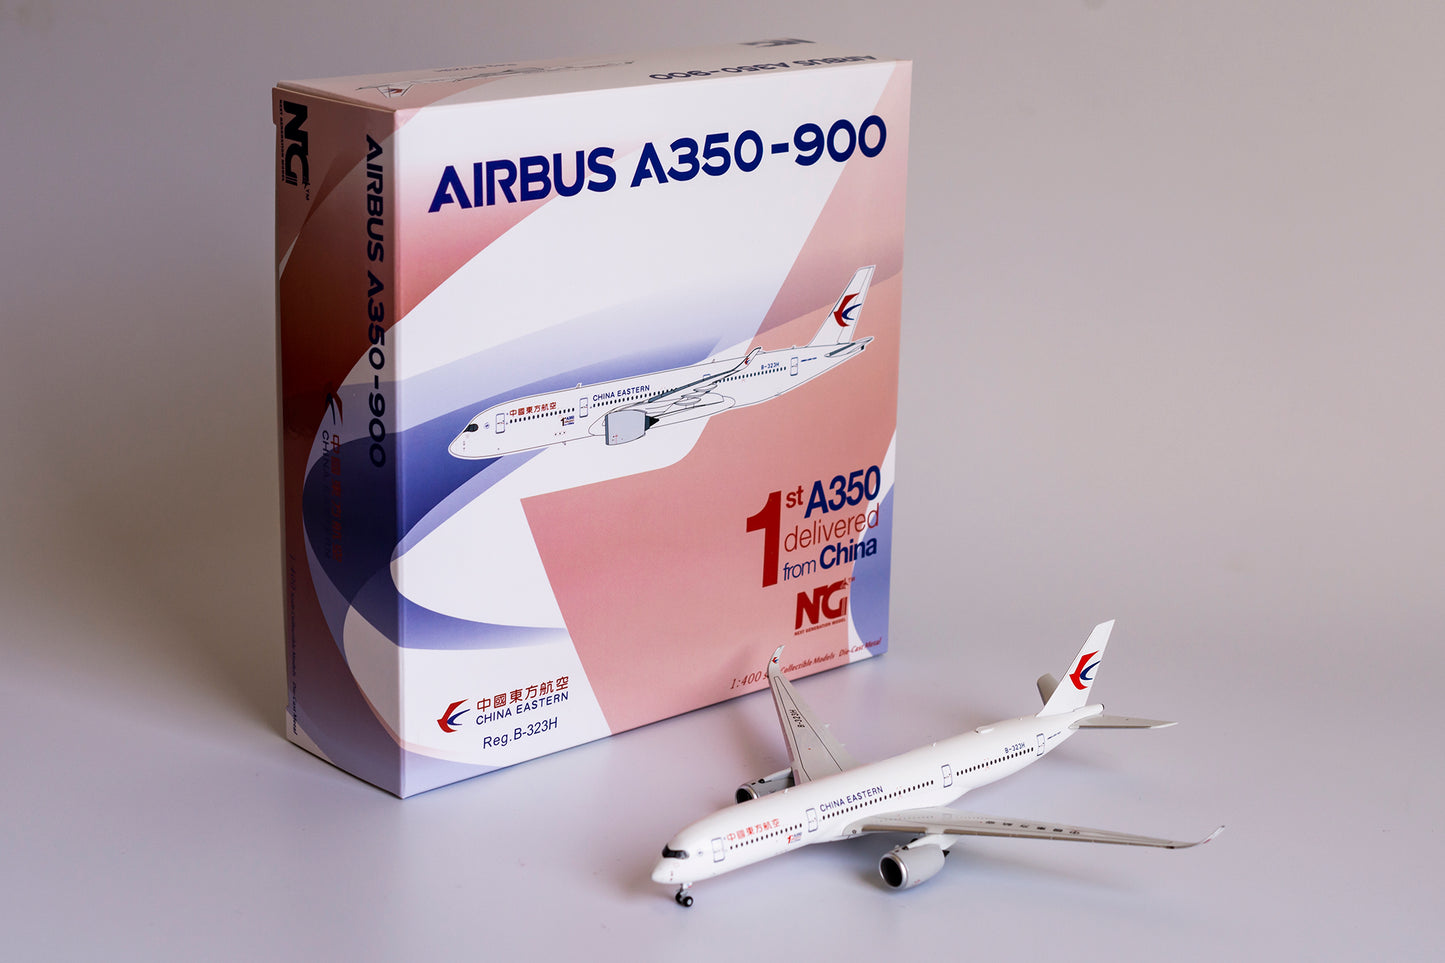 1:400 NG Models China Eastern Airbus A350-900 1st A350 delivered from China" B-323H NG39022